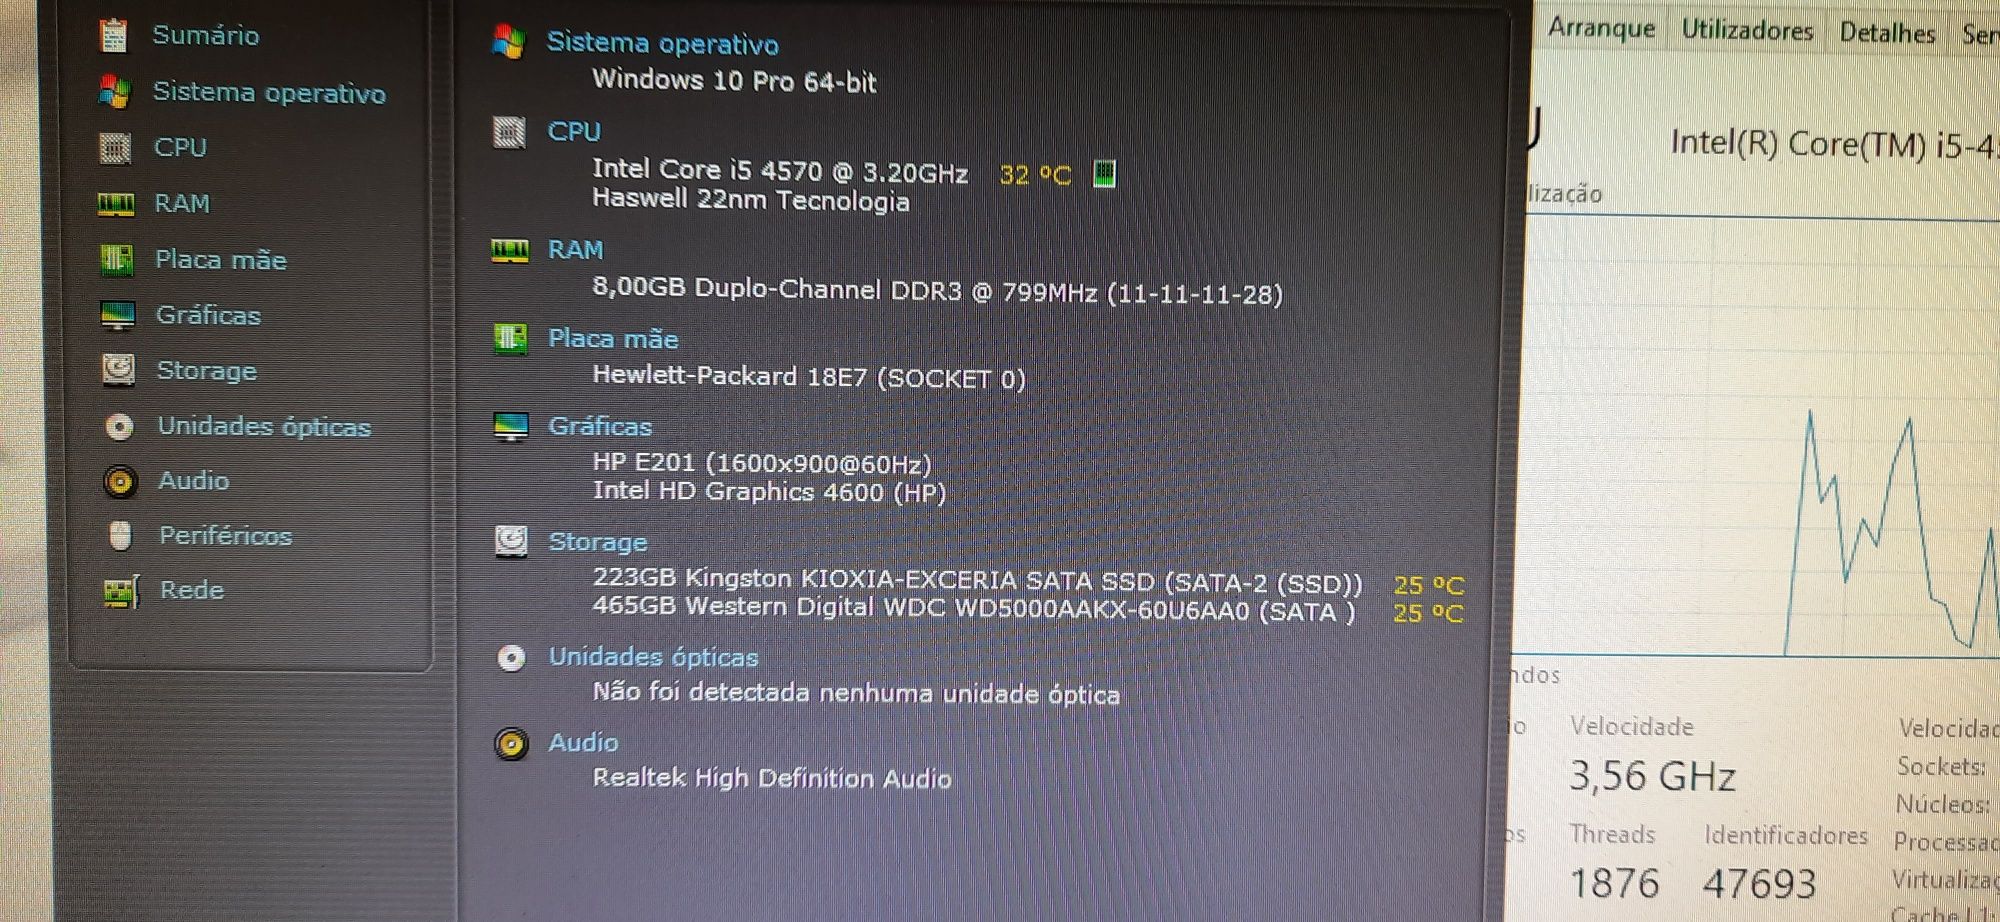 Promo HP800G1 + LCD 22"P.-4ªG. I5 3.2G-8G,SSD240+HD500,WIFI,KIT,W10/W1